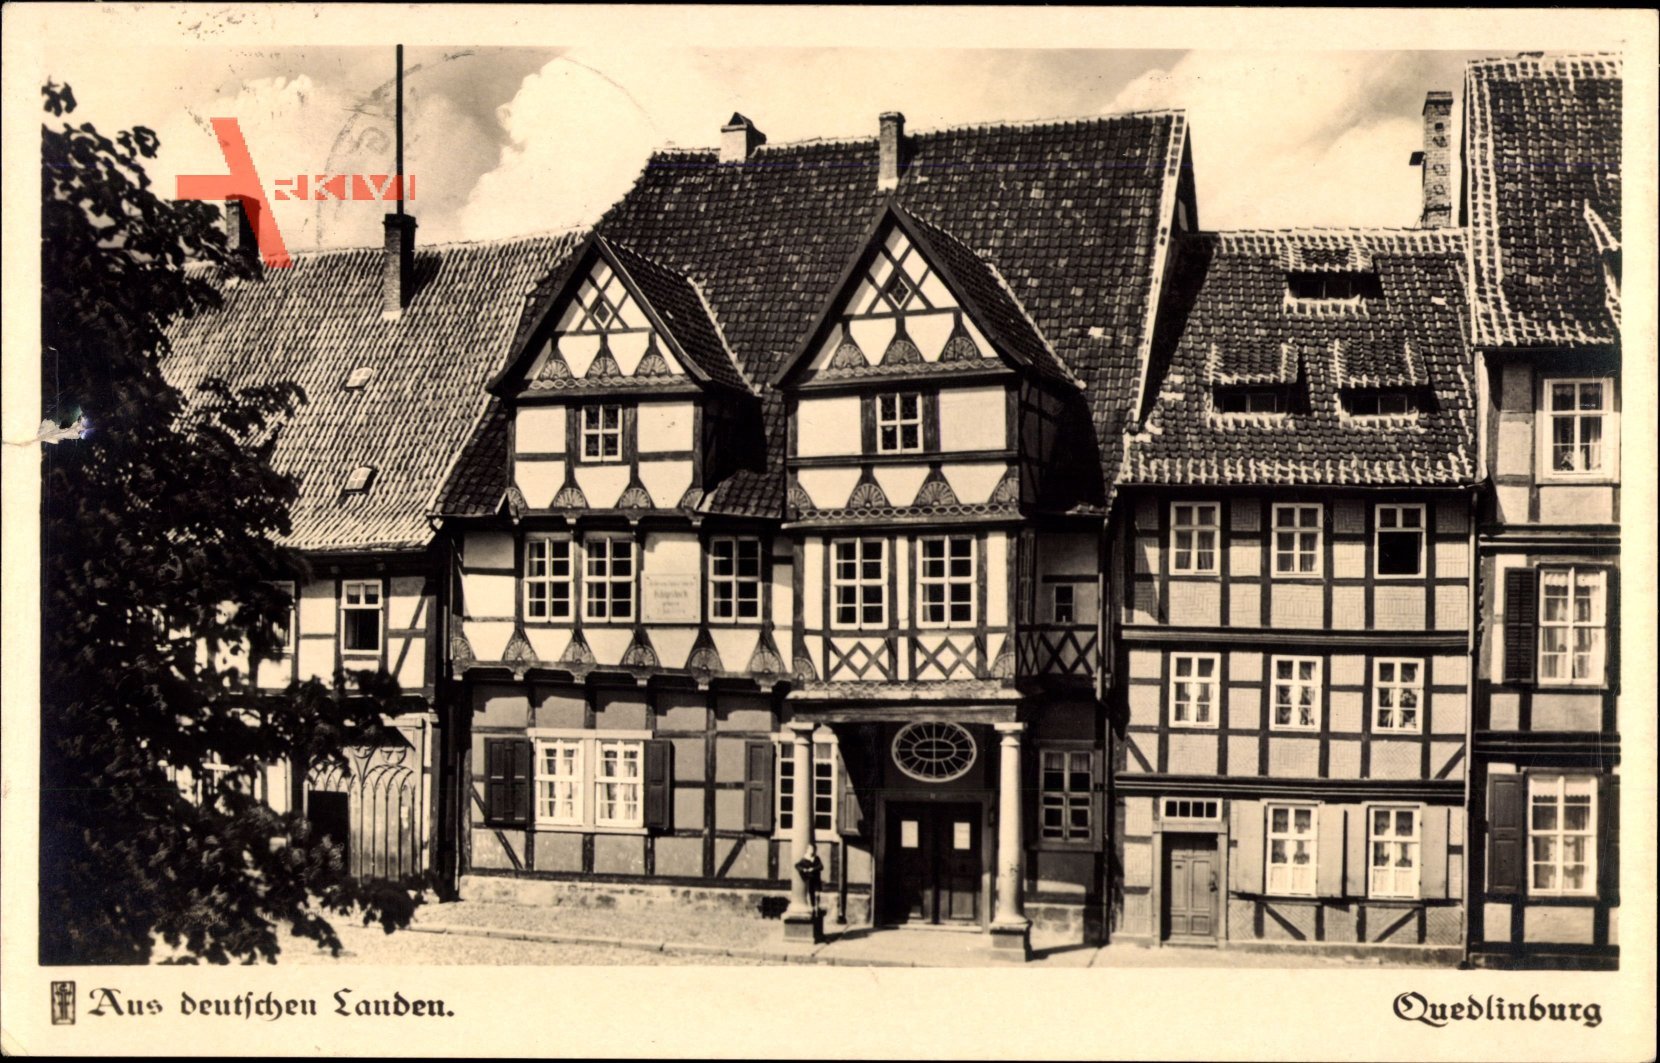 Quedlinburg im Harz, Blick auf klassische Fachwerkhäuser, Klopstockhaus